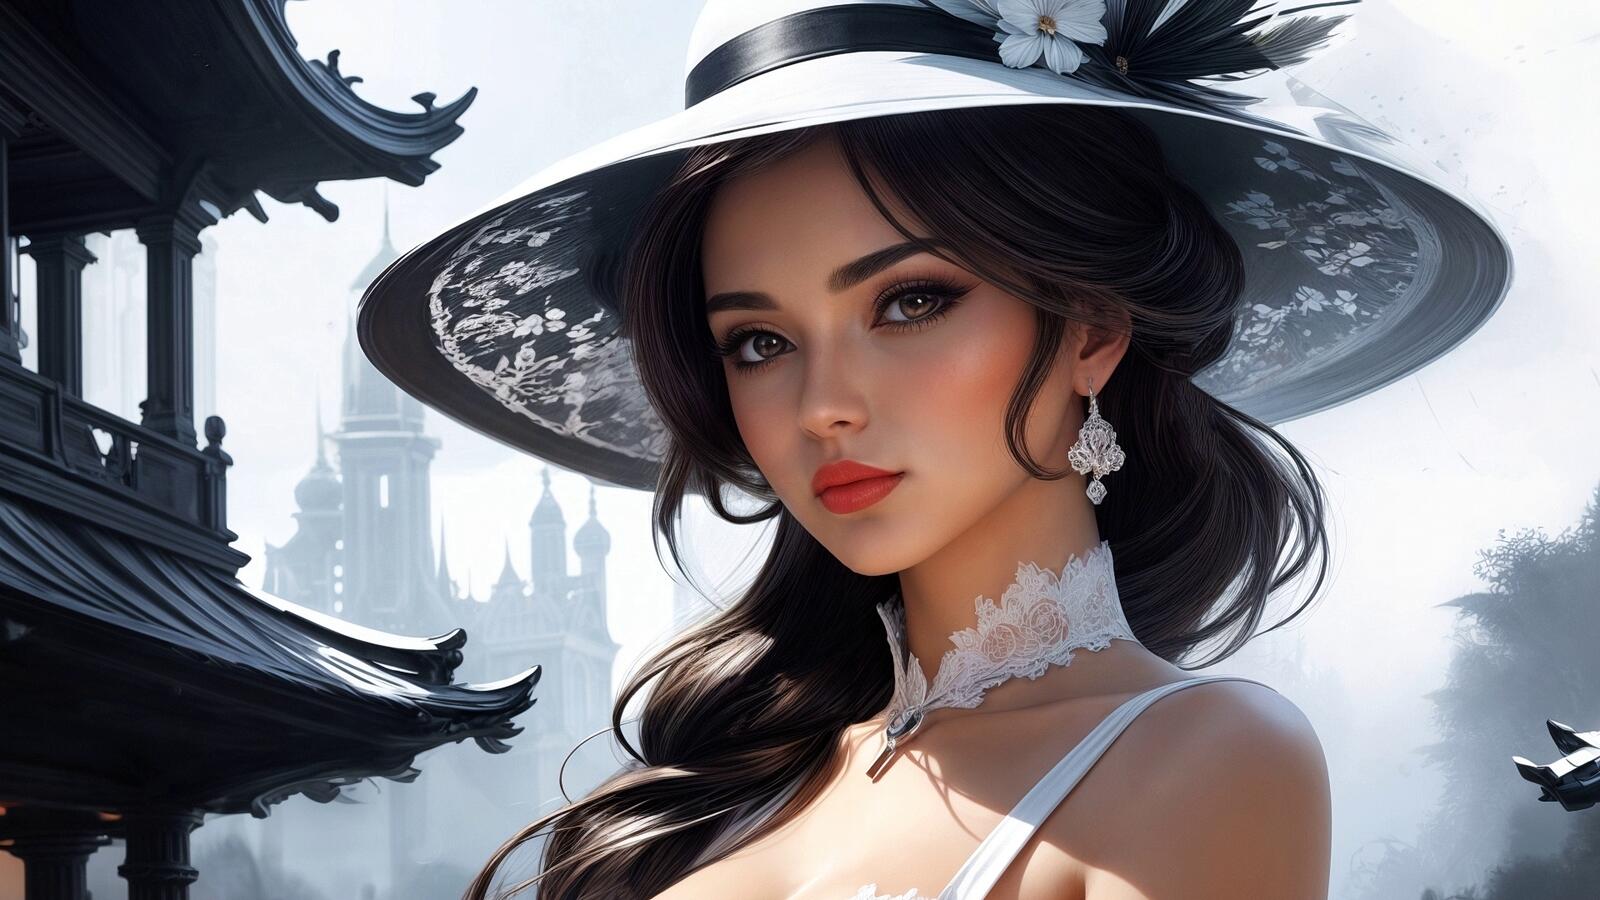 Бесплатное фото Портрет девушки  в белой шляпе и платье